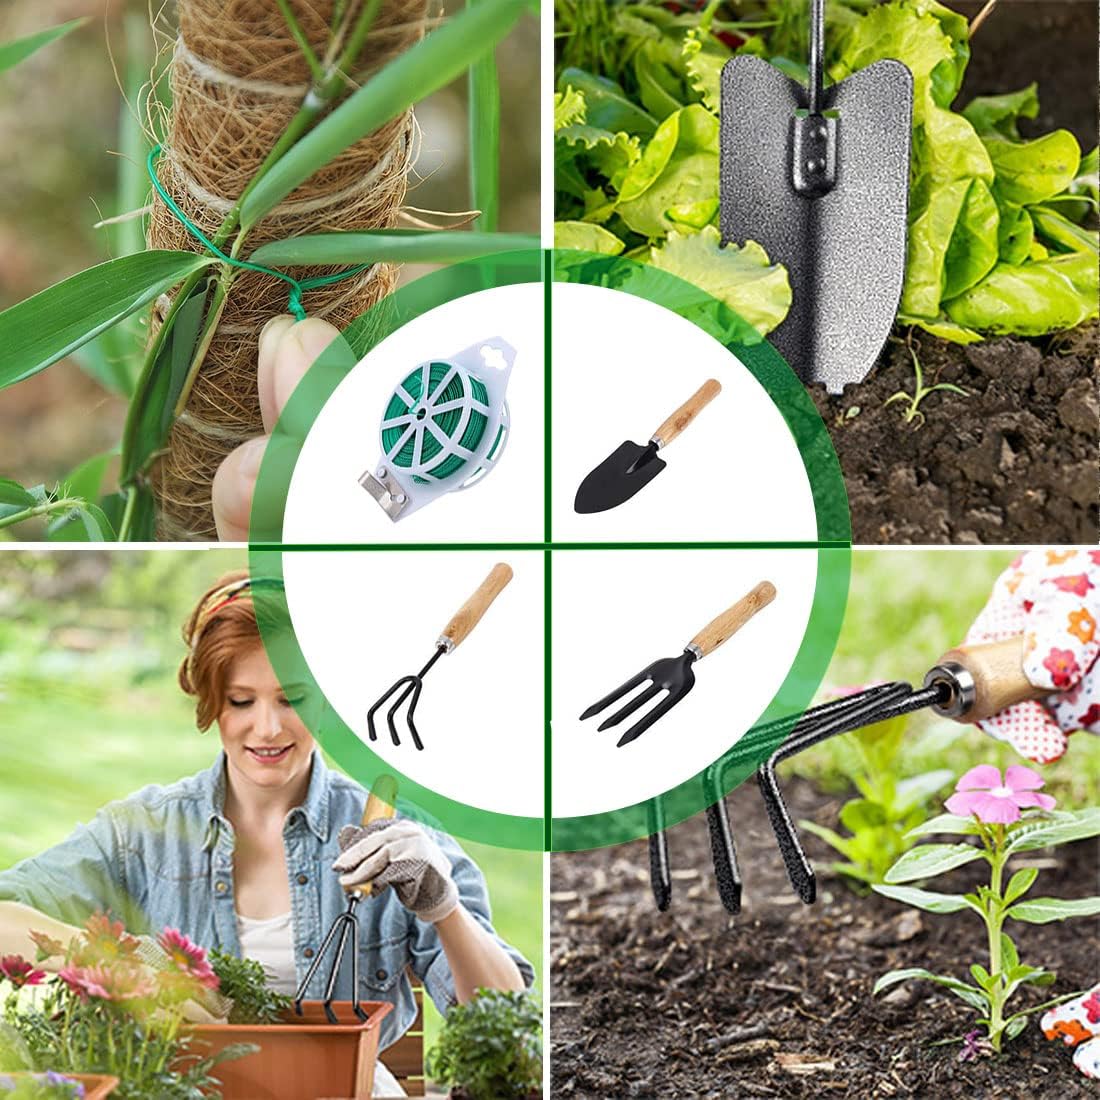 Twist Ties With Garden Tool Set For Gardening